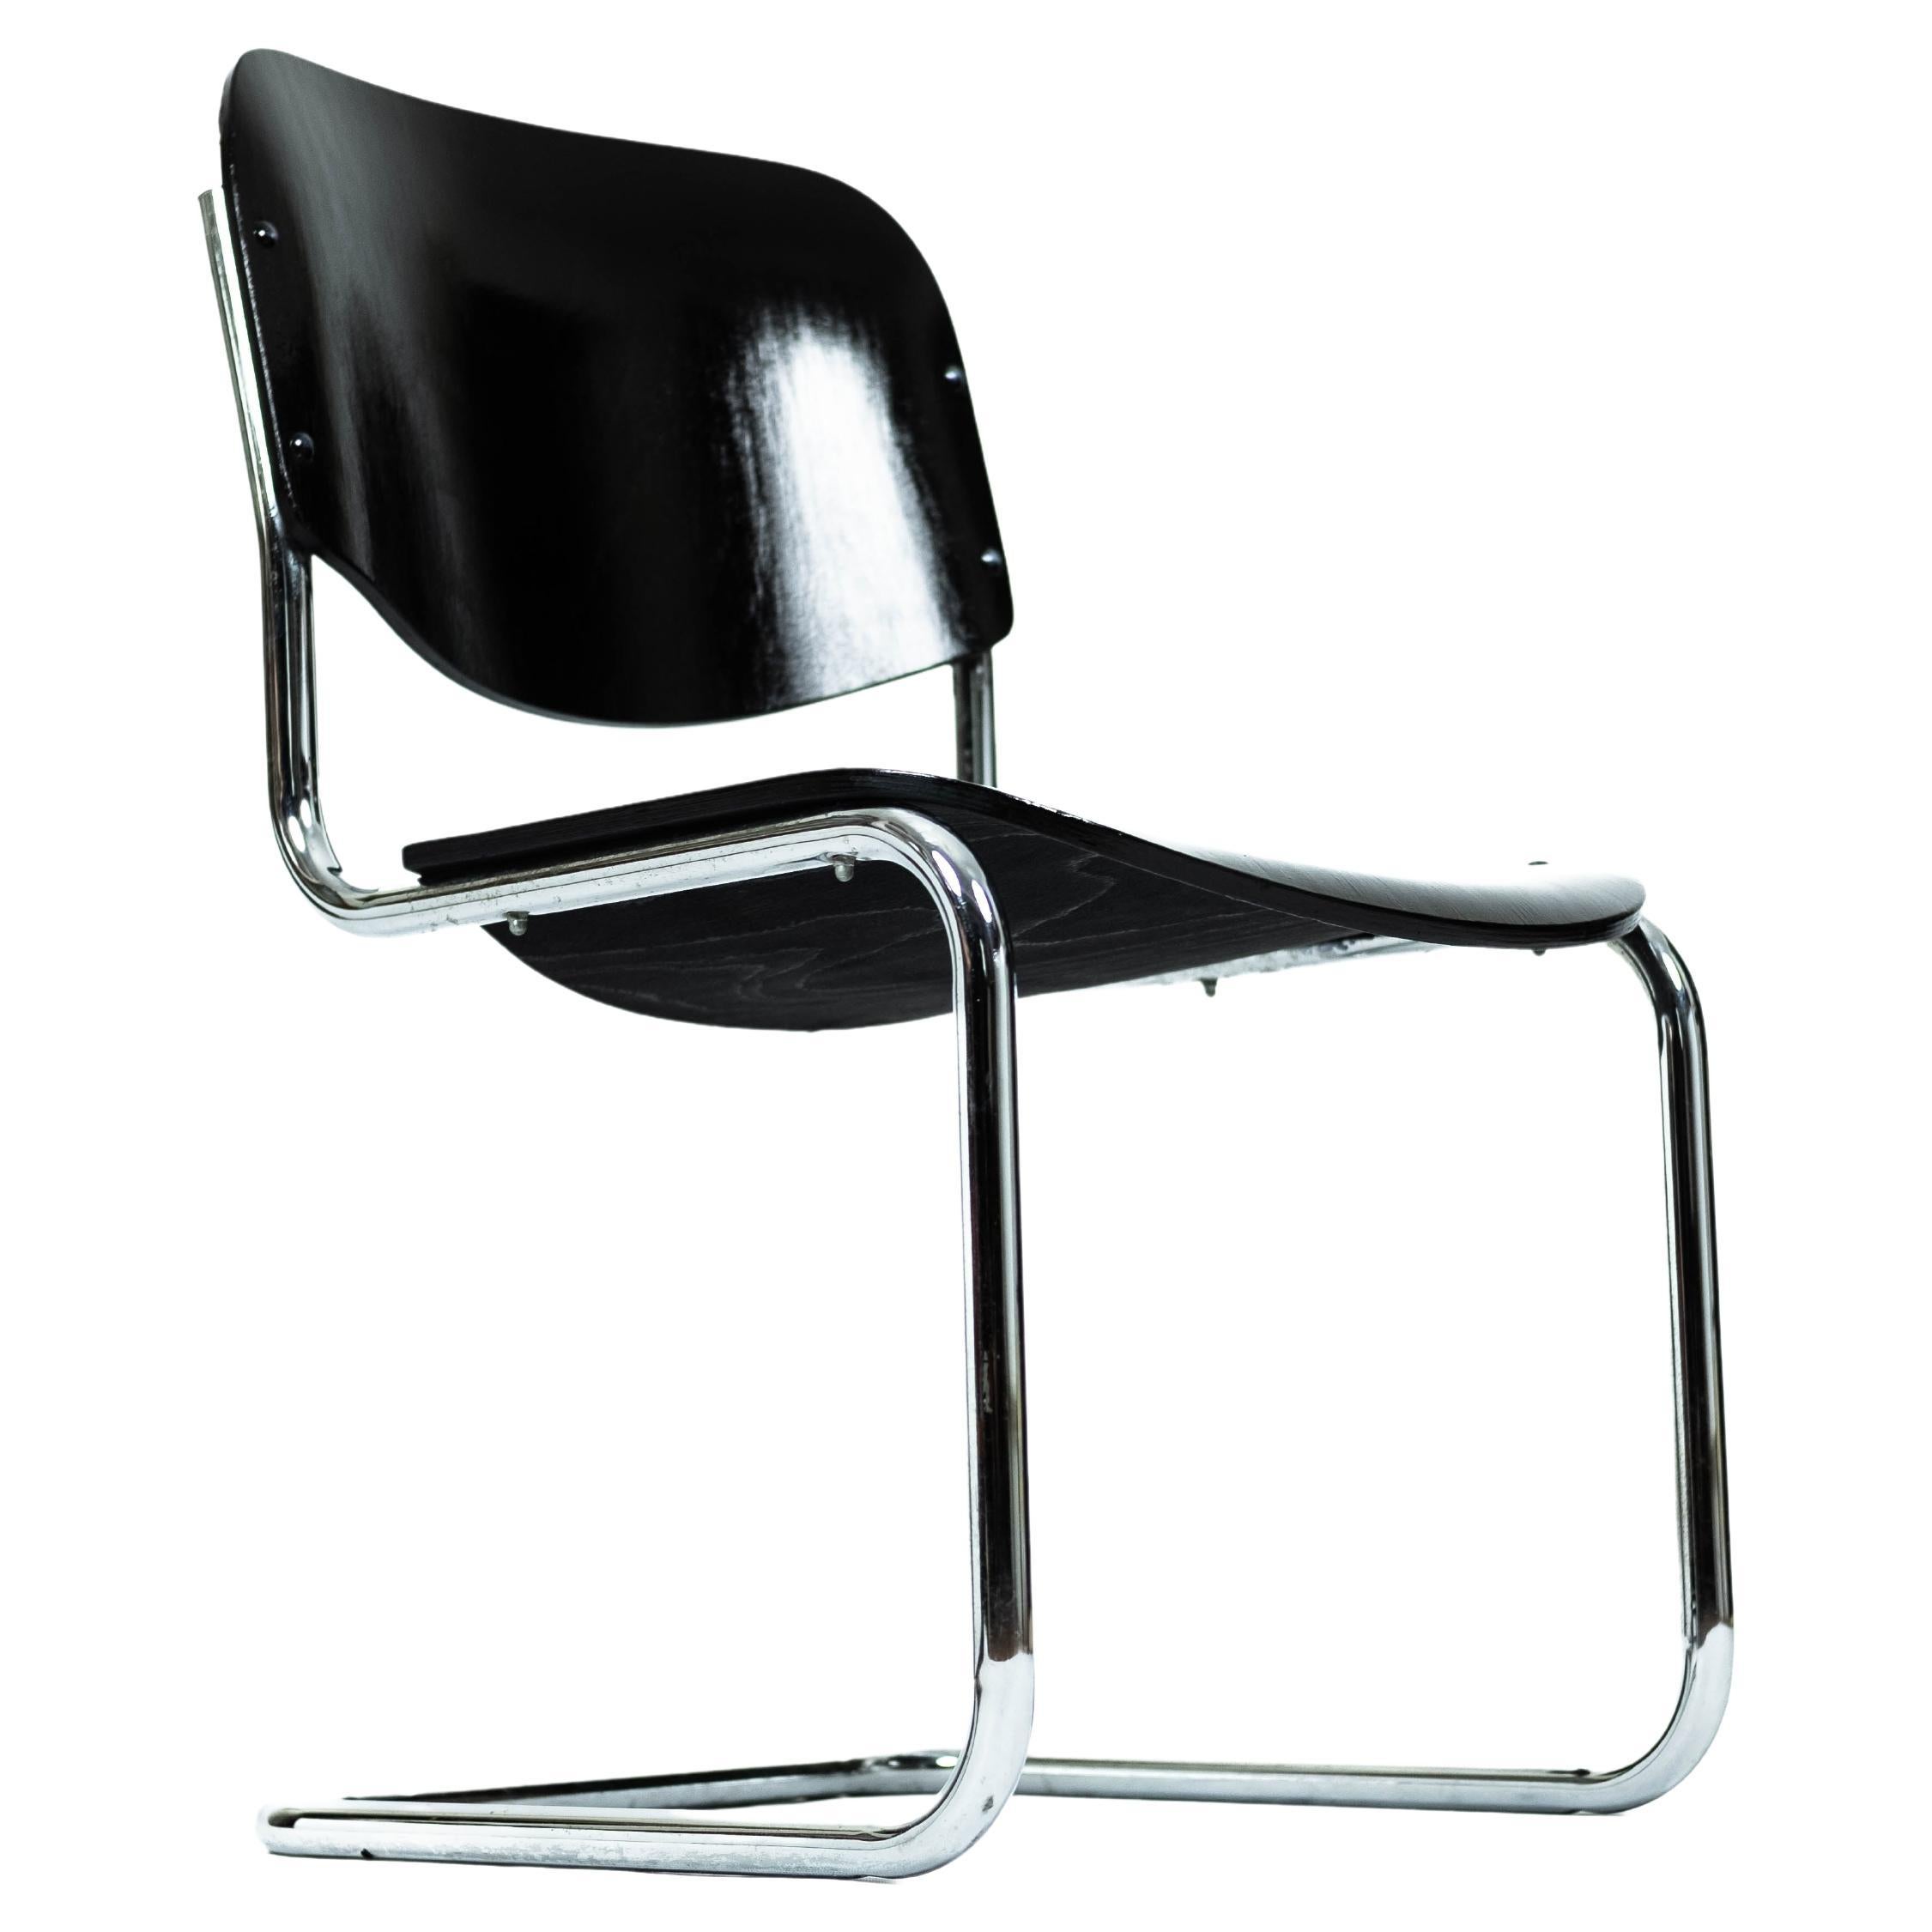 Black Steelpipe Chair in Bauhaus-Style (Vienna, 1970)